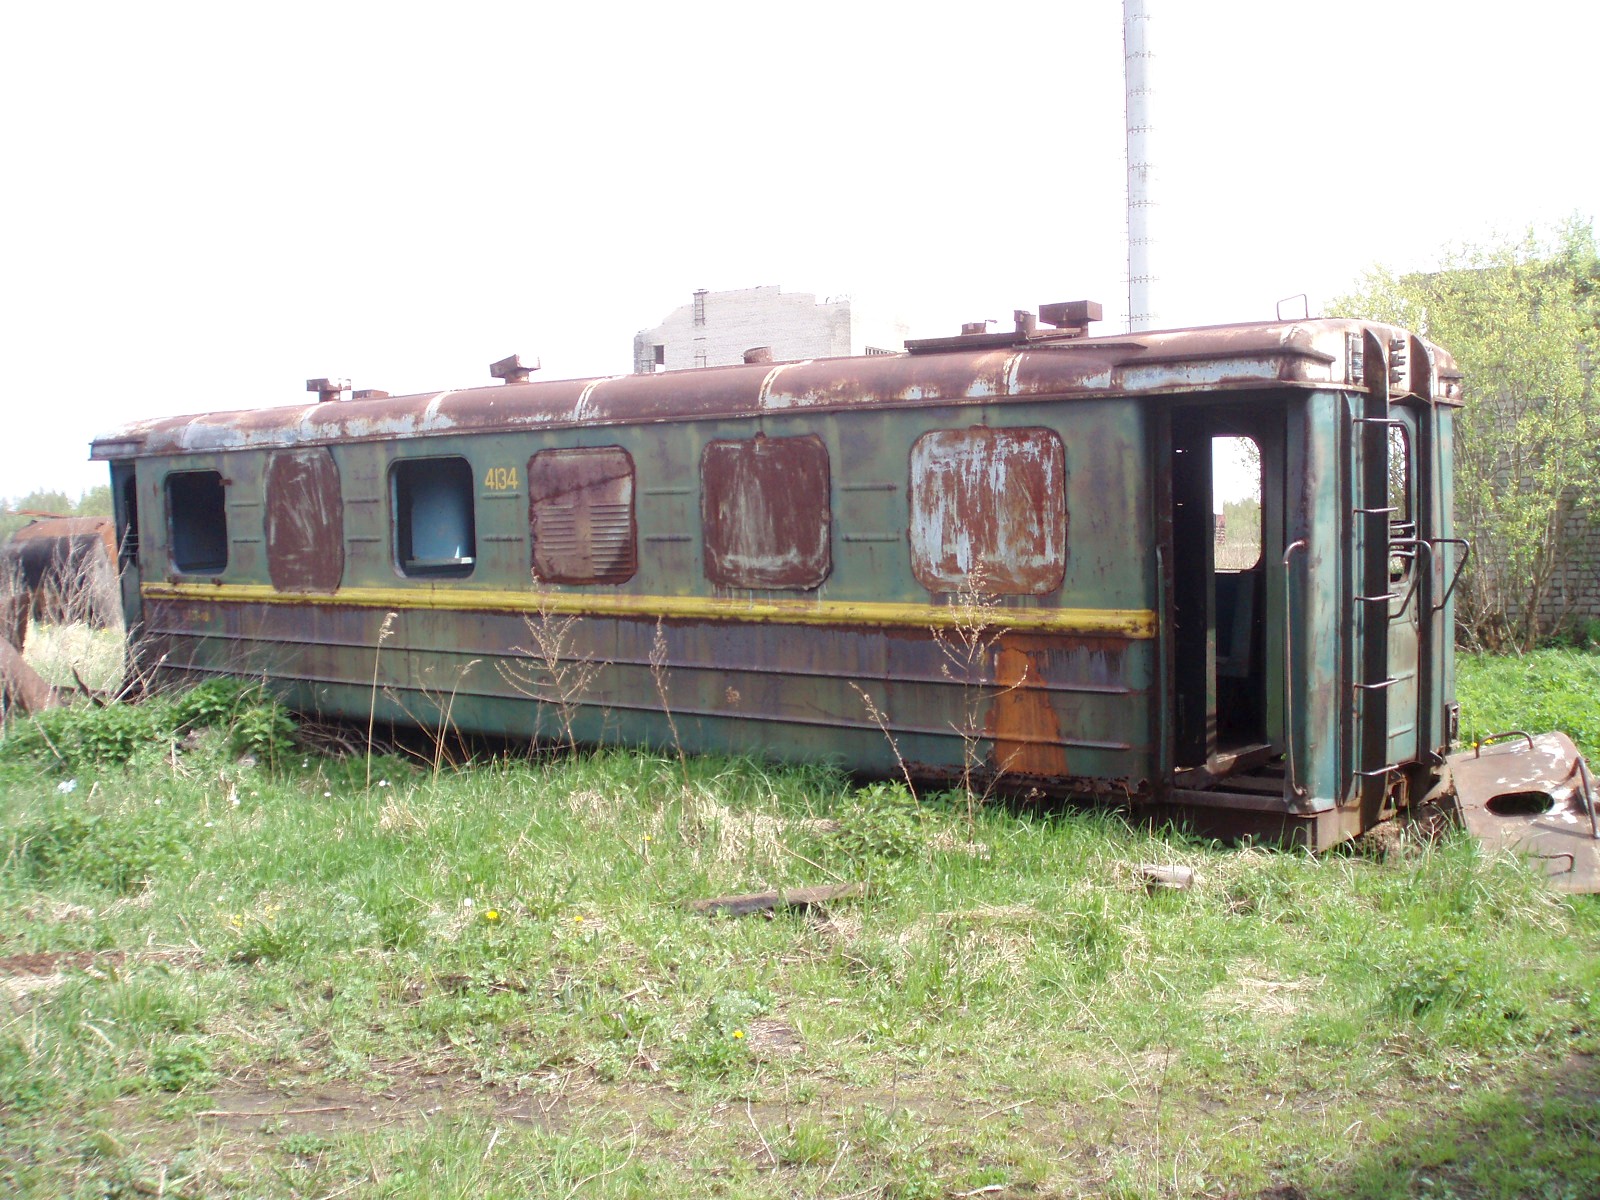 Узкоколейная железная дорога  торфопредприятия «Чистик»  —  фотографии, сделанные в 2007 году (часть 1)